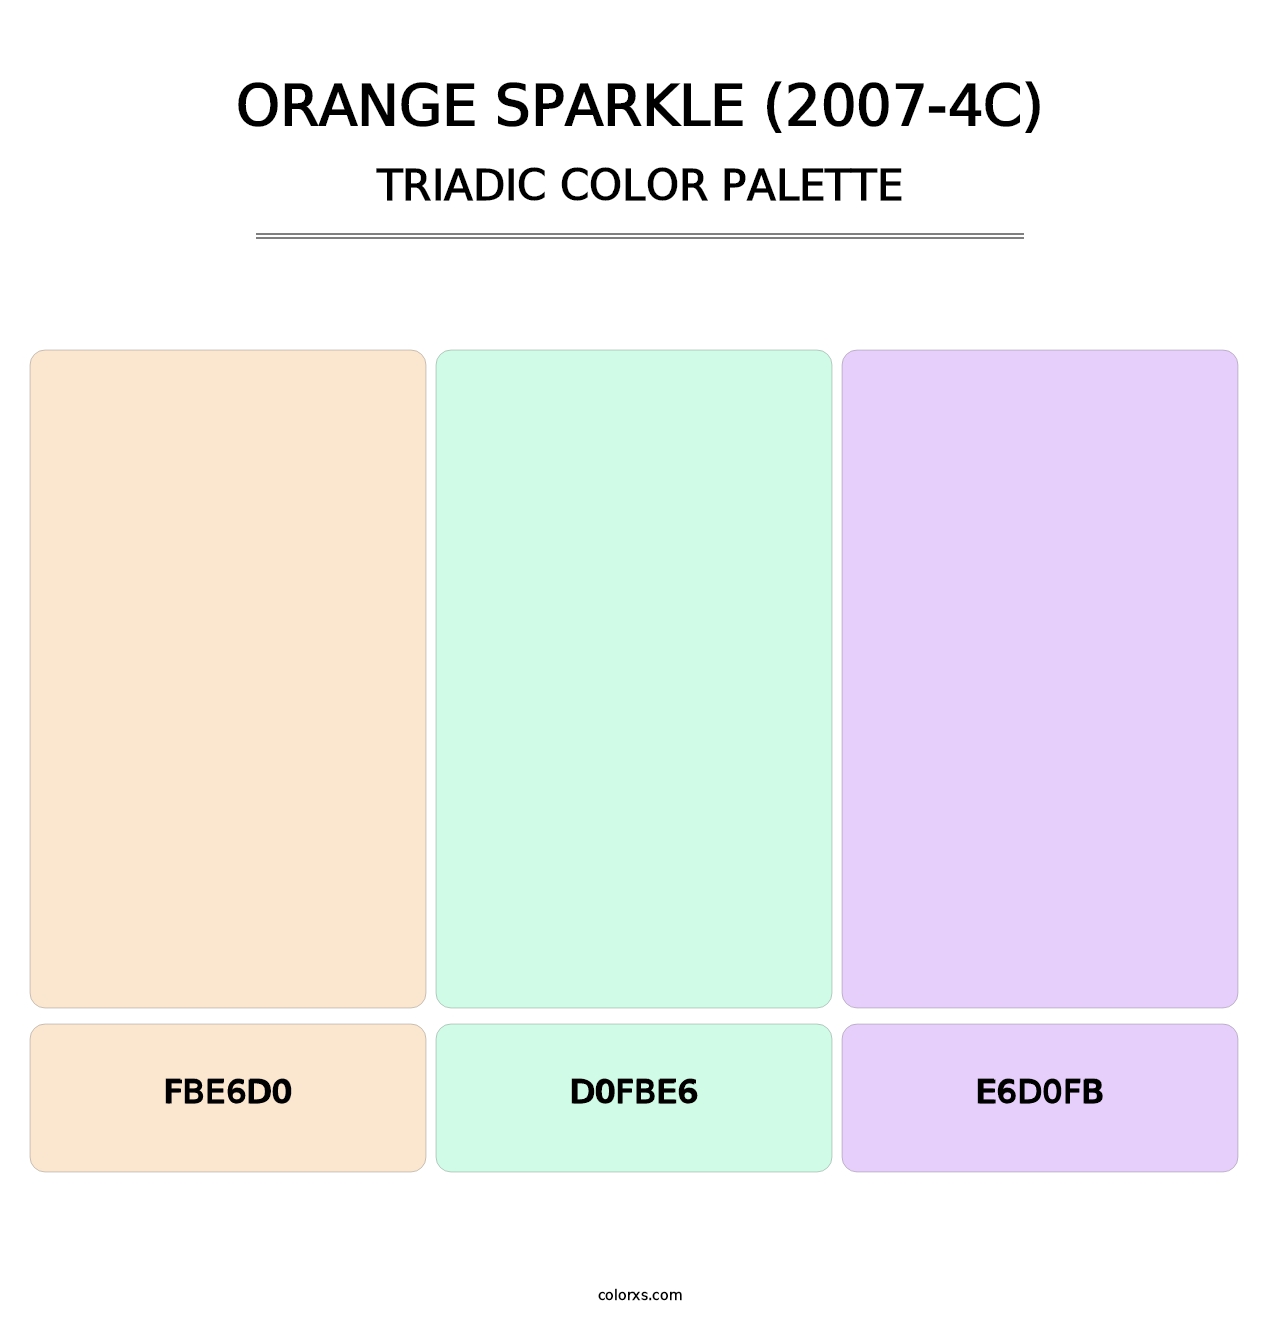 Orange Sparkle (2007-4C) - Triadic Color Palette